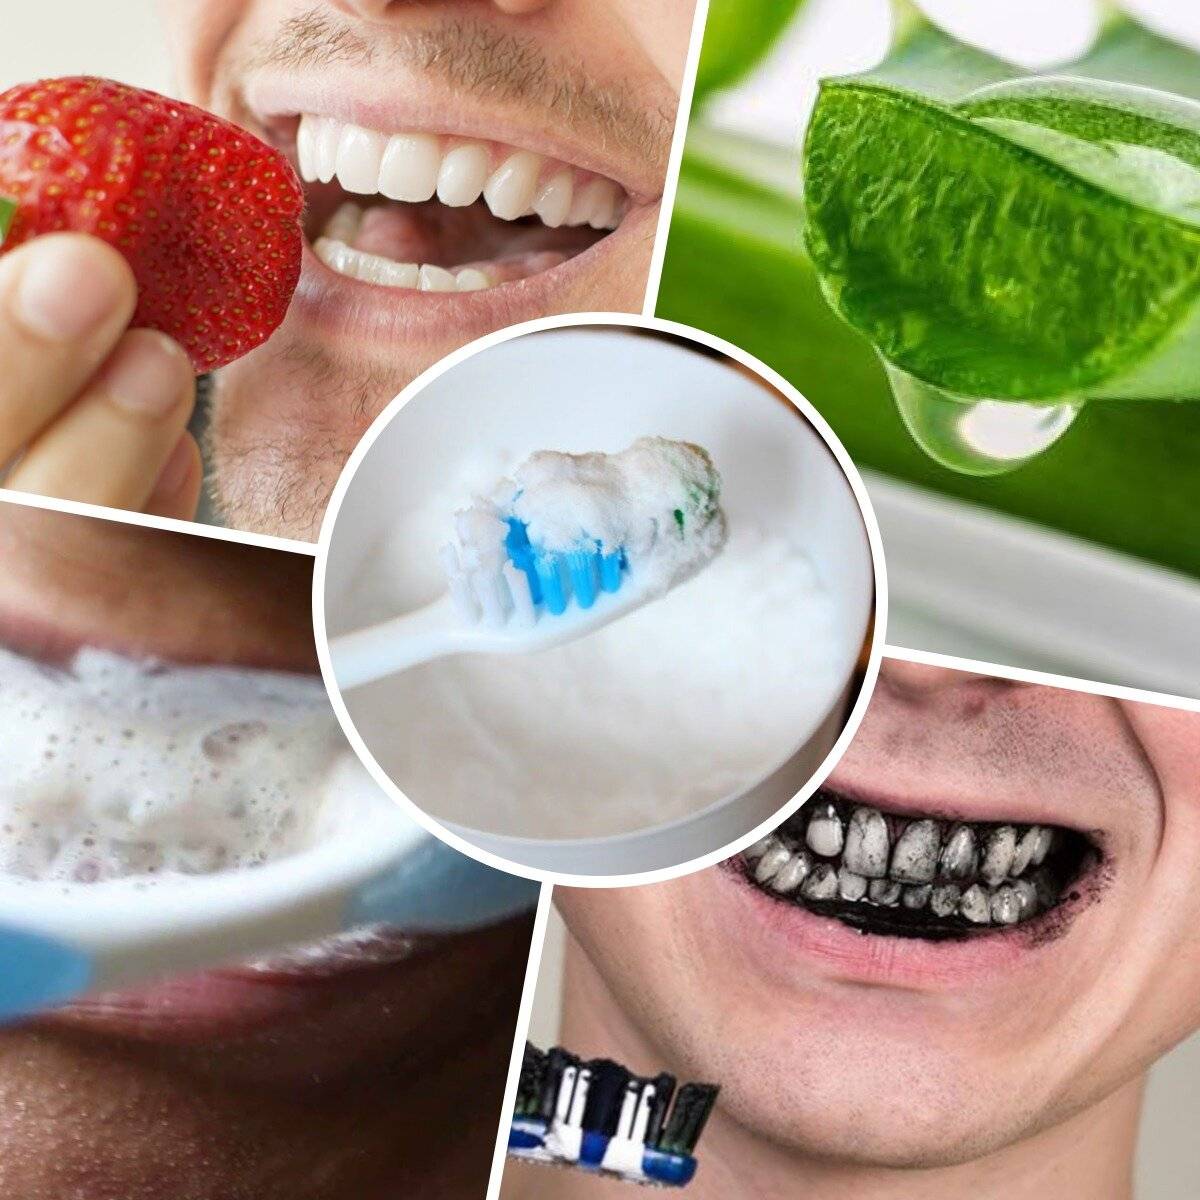 вред от отбеливании зубов